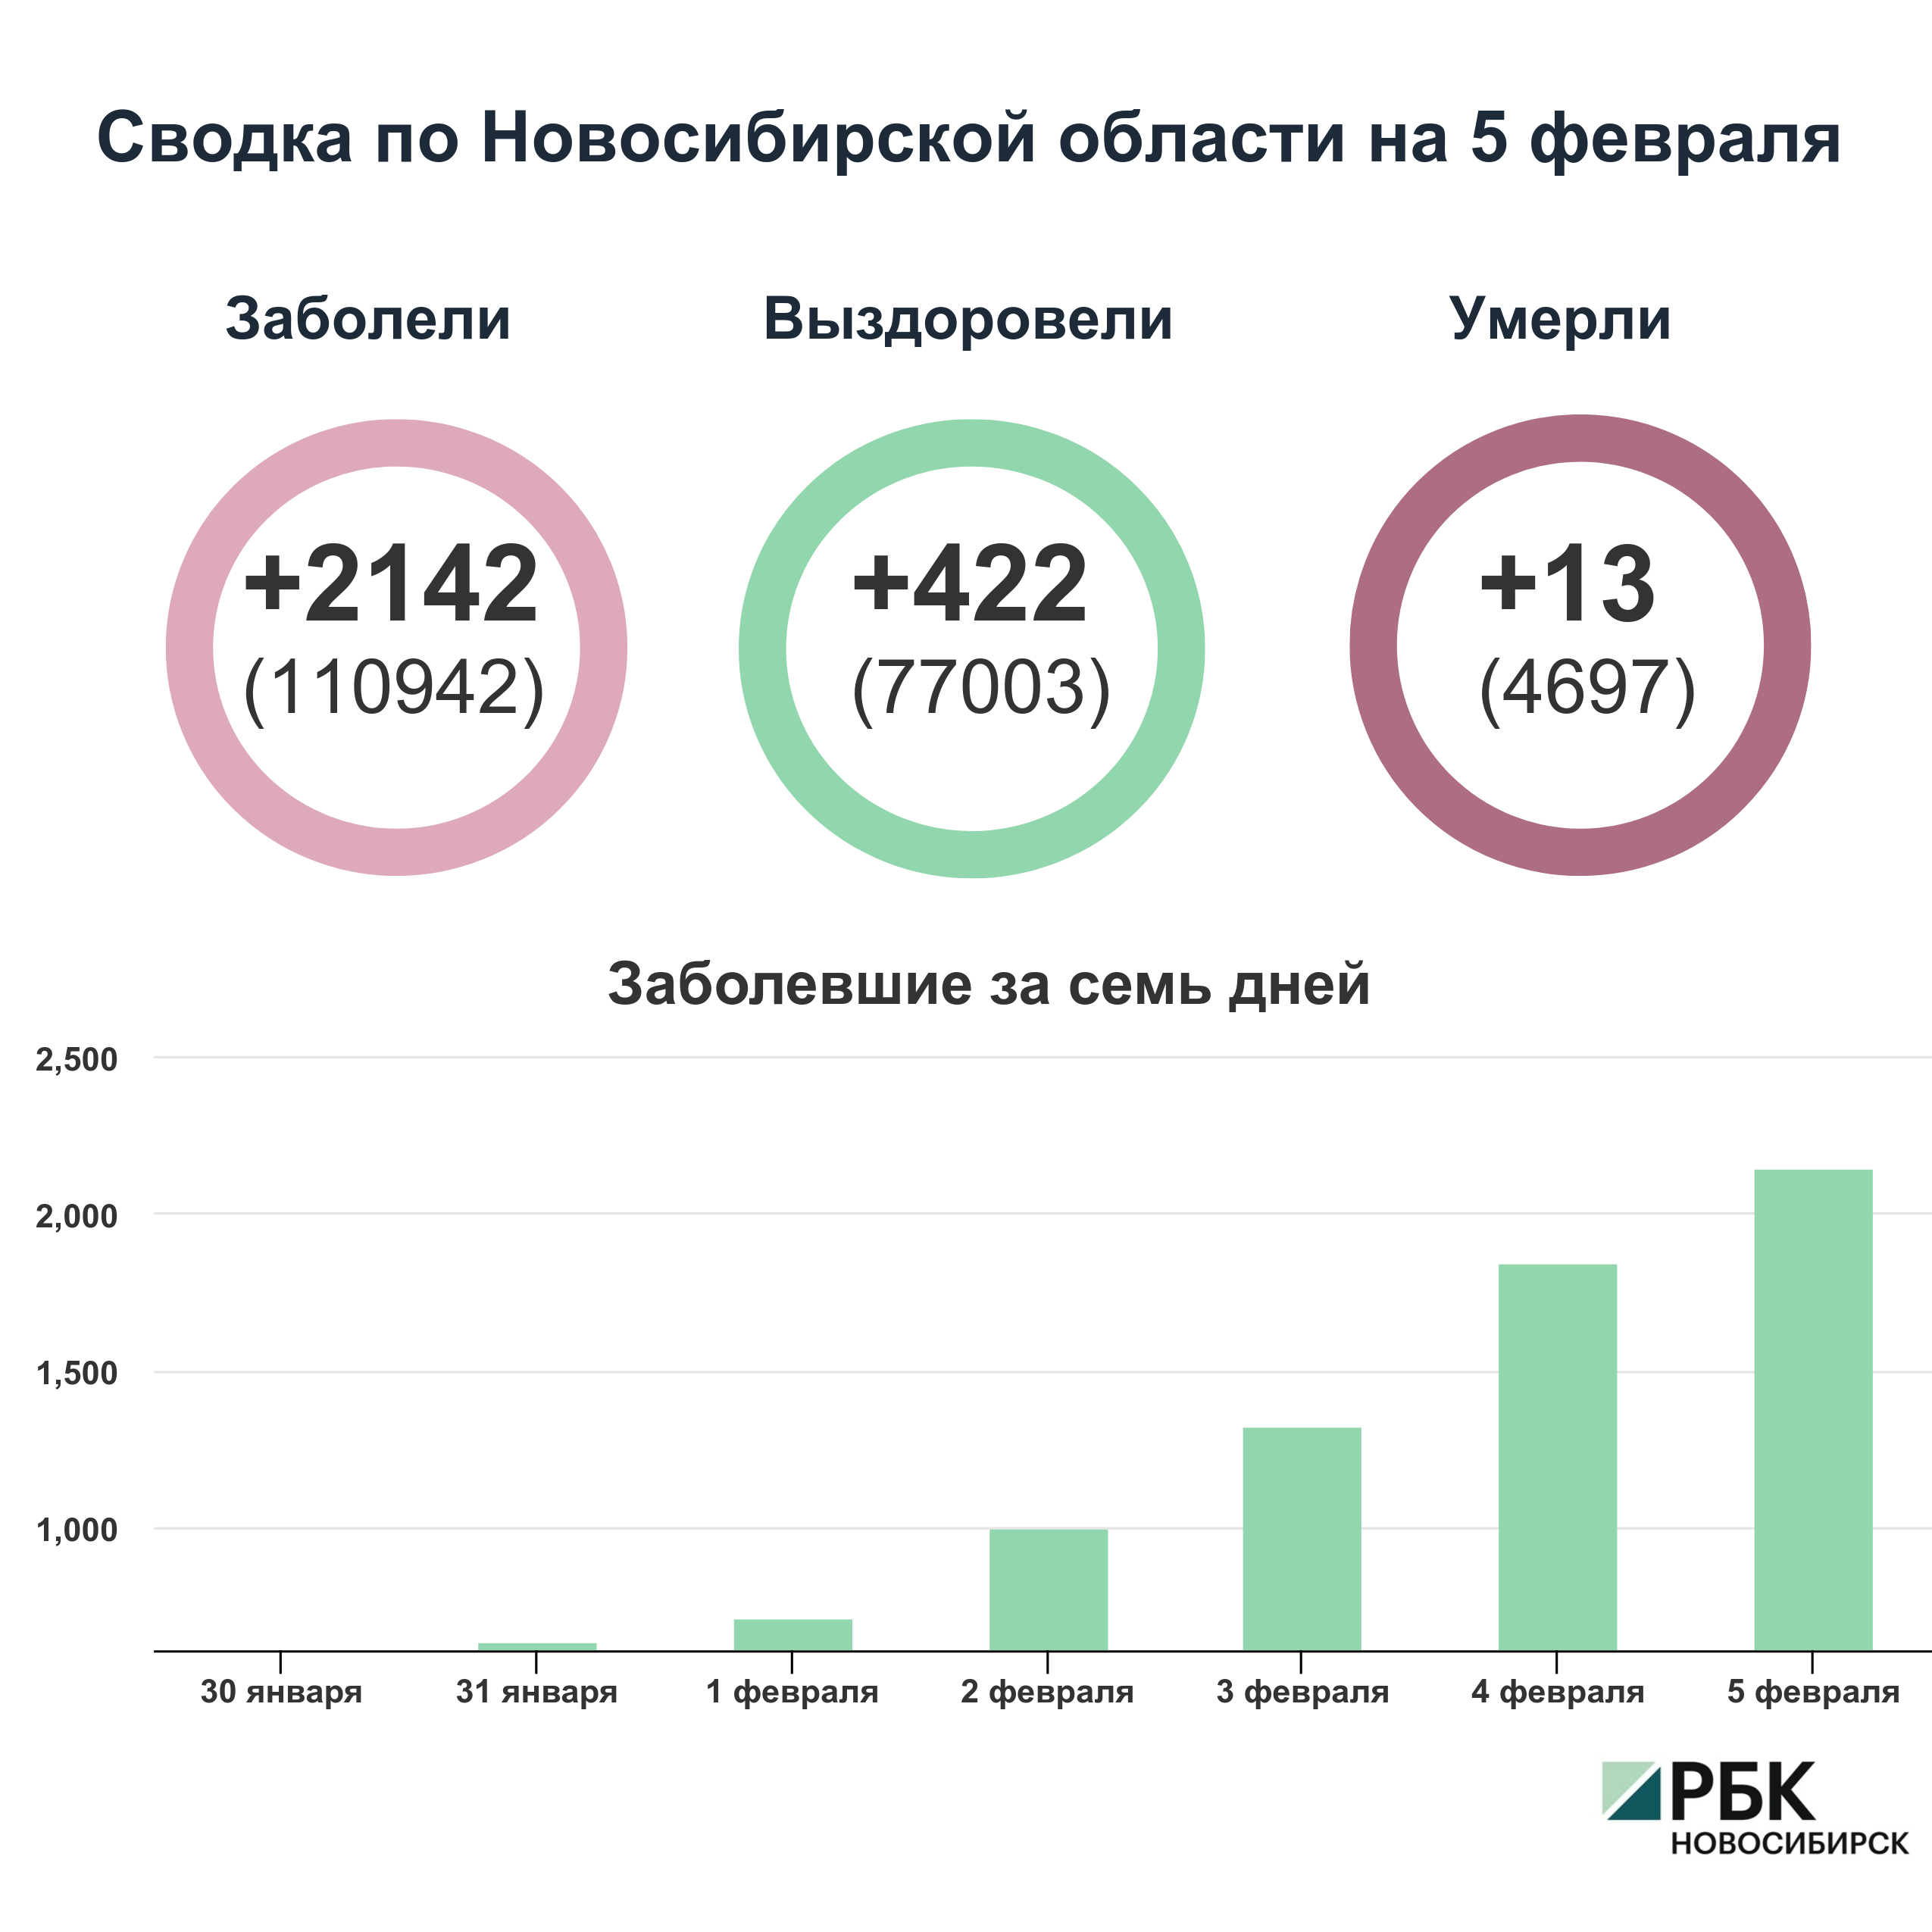 Коронавирус в Новосибирске: сводка на 5 февраля